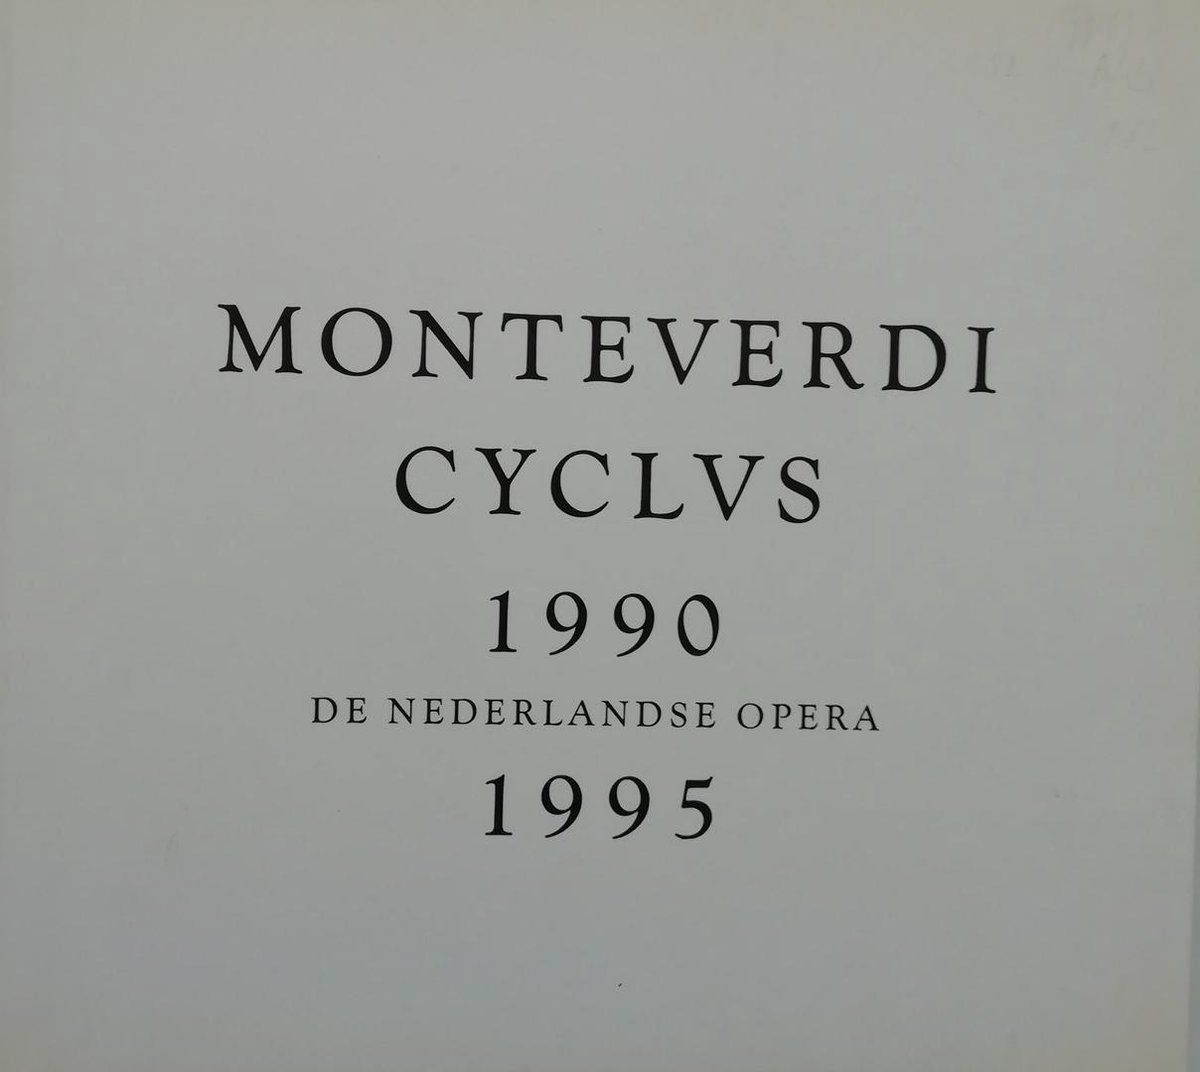 Monteverdi cyclus 1990-1995